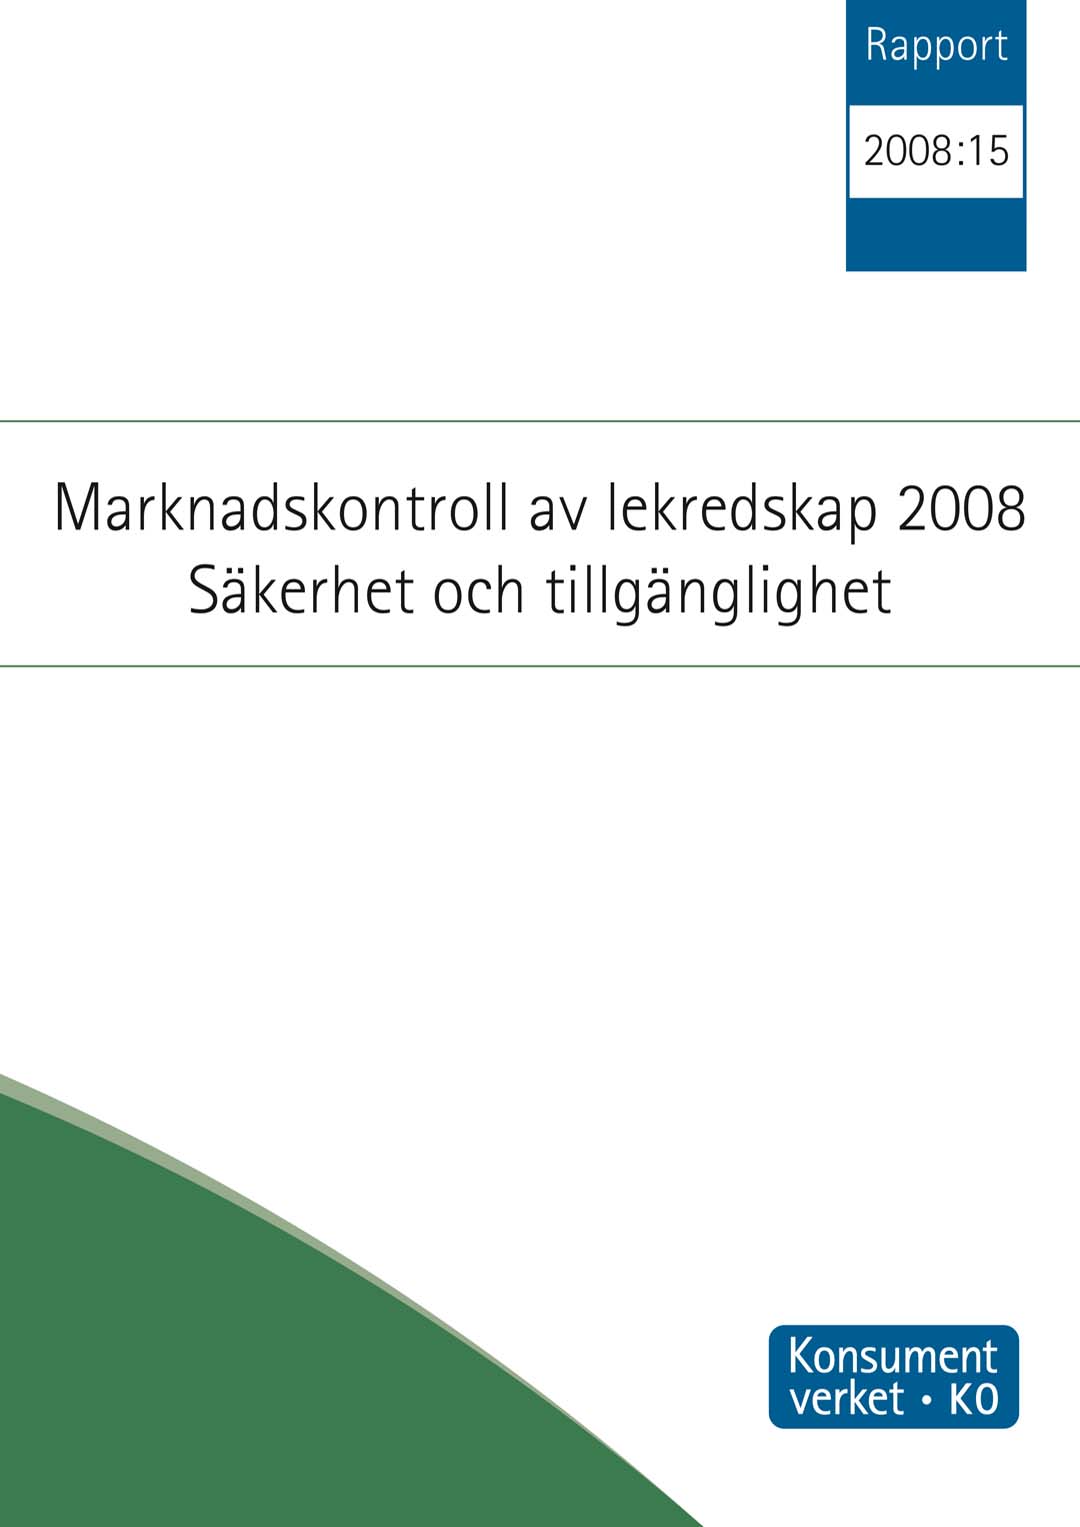 Rapport 2008:15 Marknadskontroll av lekredskap 2008. Säkerhet och tillgänlighet